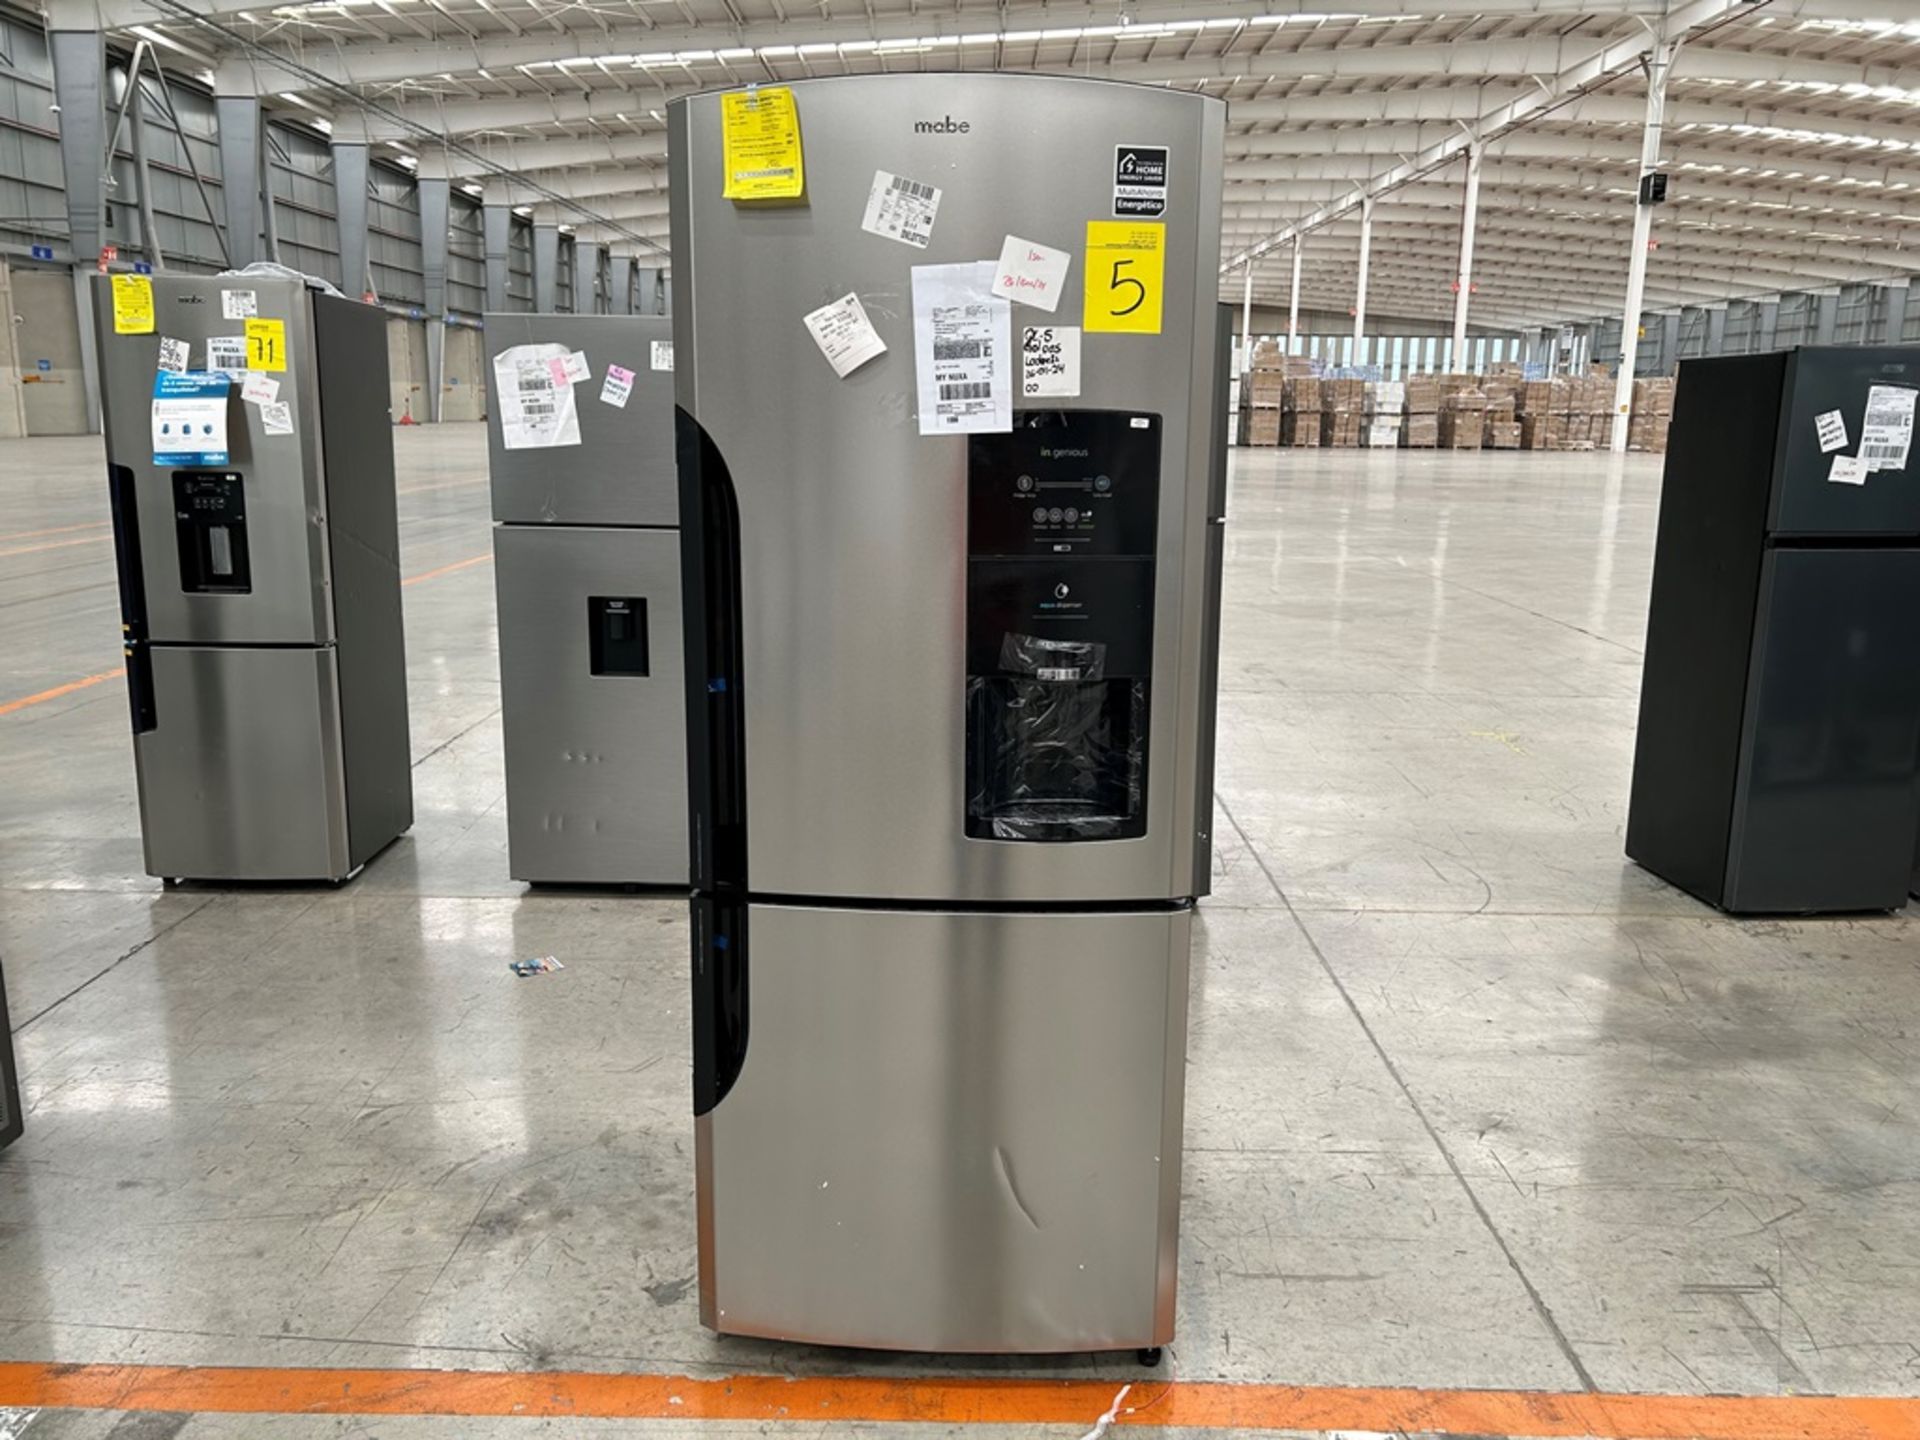 Lote de 1 Refrigerador con dispensador de agua Marca MABE, Modelo RMB520IB, Serie 409714, Color GRI